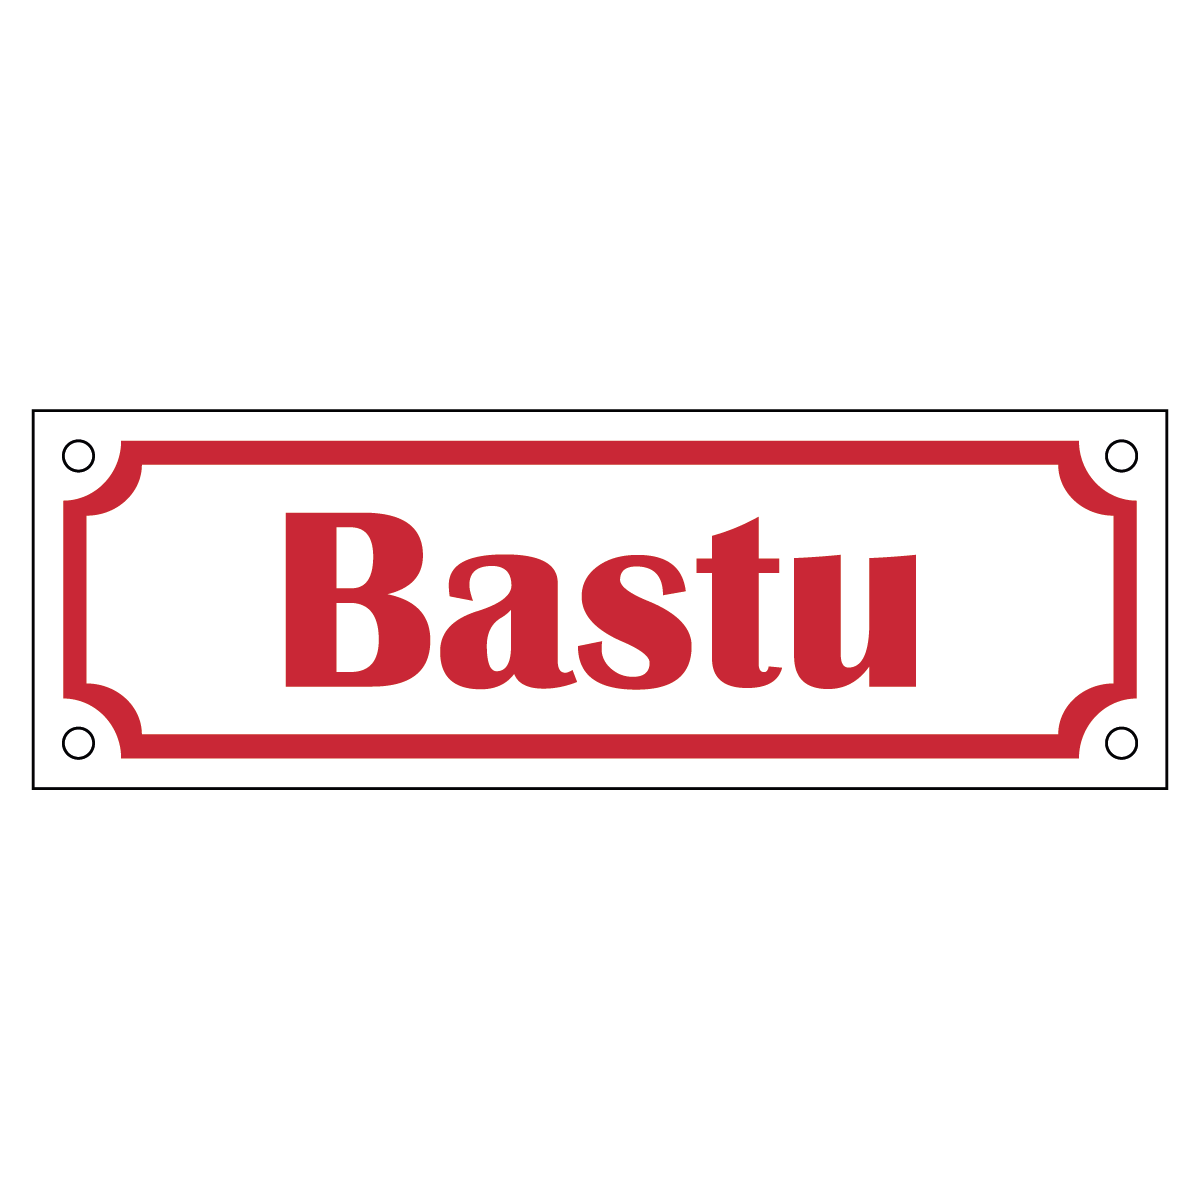 Bastu - Skylt - 150x50mm - Vit - Röd